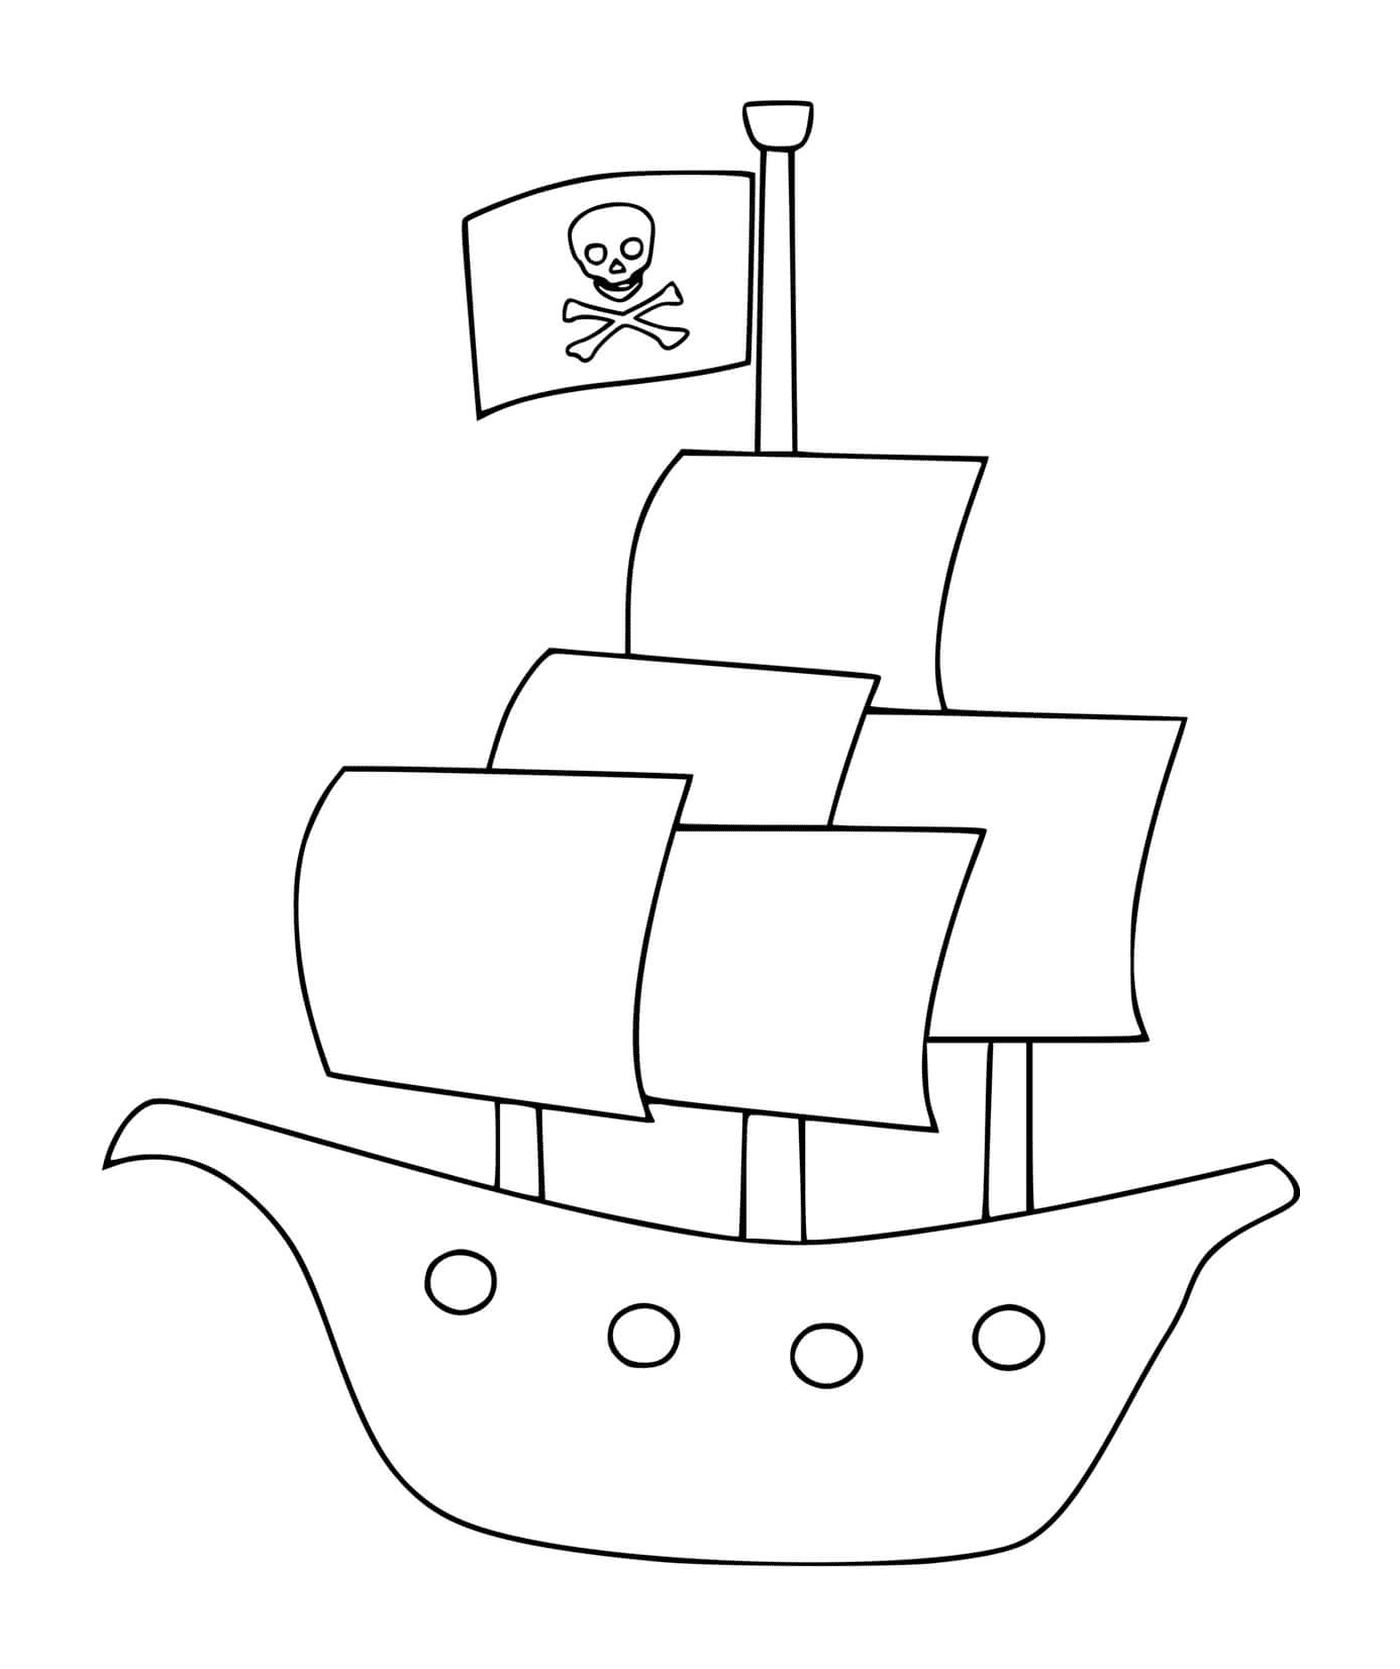  A pirate ship 